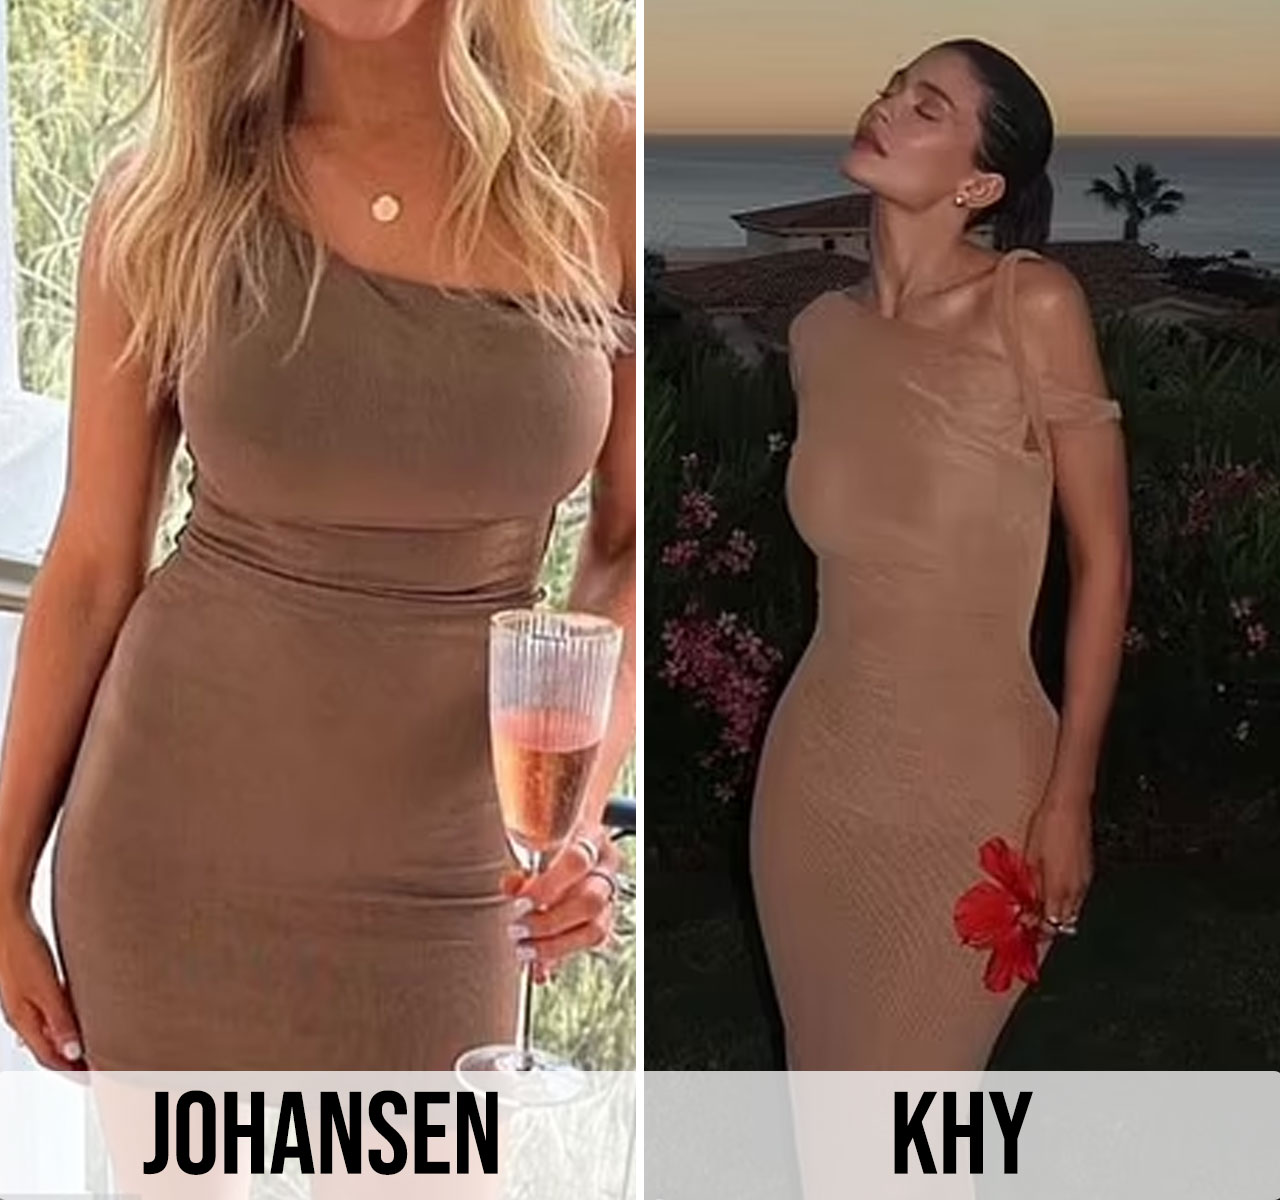 Jessica Johansen Bell vs Kylie Jenner designs